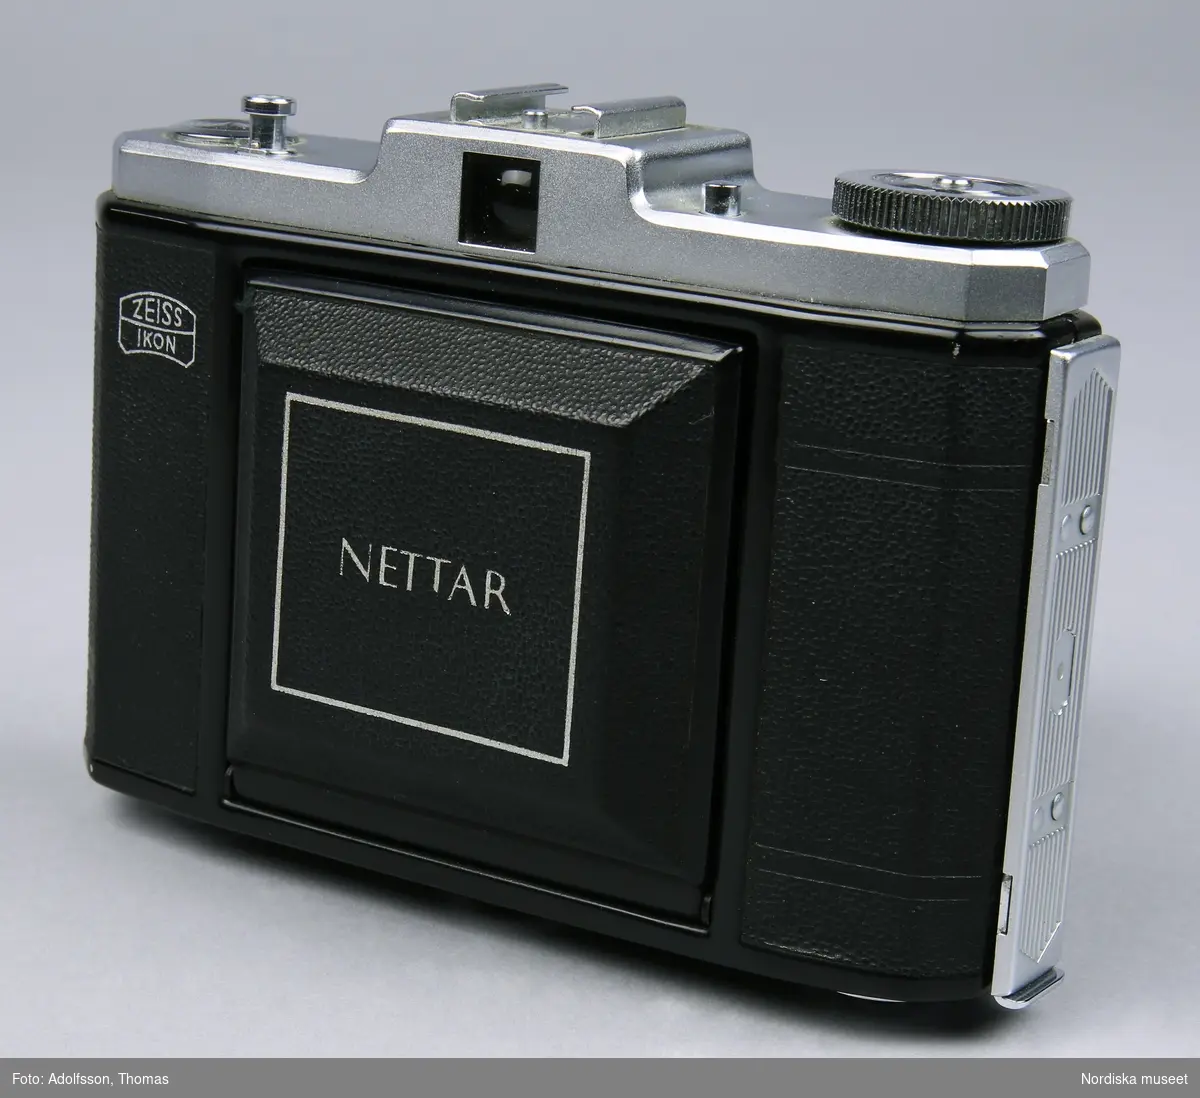 Svart bälgkamera för 60 mm bred rullfilm av märket Zeiss Ikon. Modell Nettar 518/16. Kameran har ett svart hölje av plast. Ovandel i lättmetall.  
Johanna Skoglund 2013-04-02